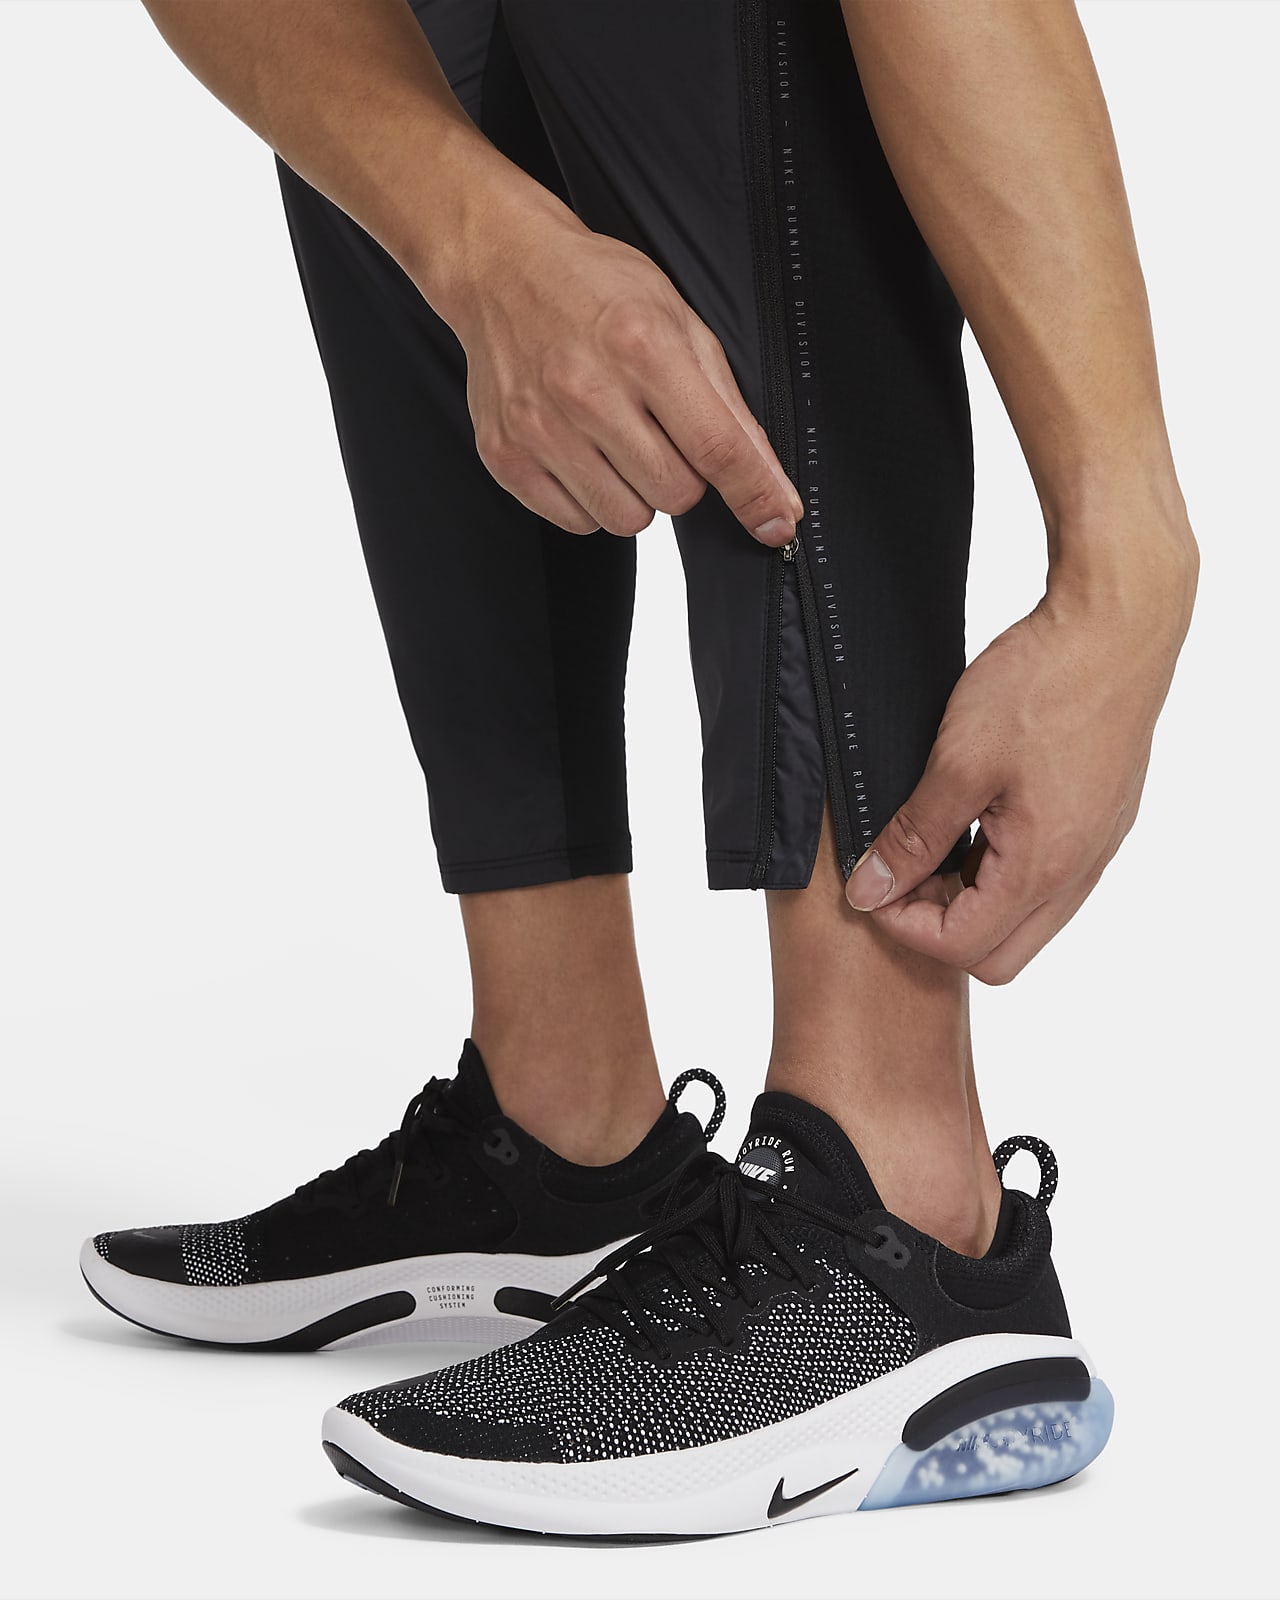 Nike公式 ナイキ フェノム エリート シールド ラン ディビジョン メンズ ランニングパンツ オンラインストア 通販サイト